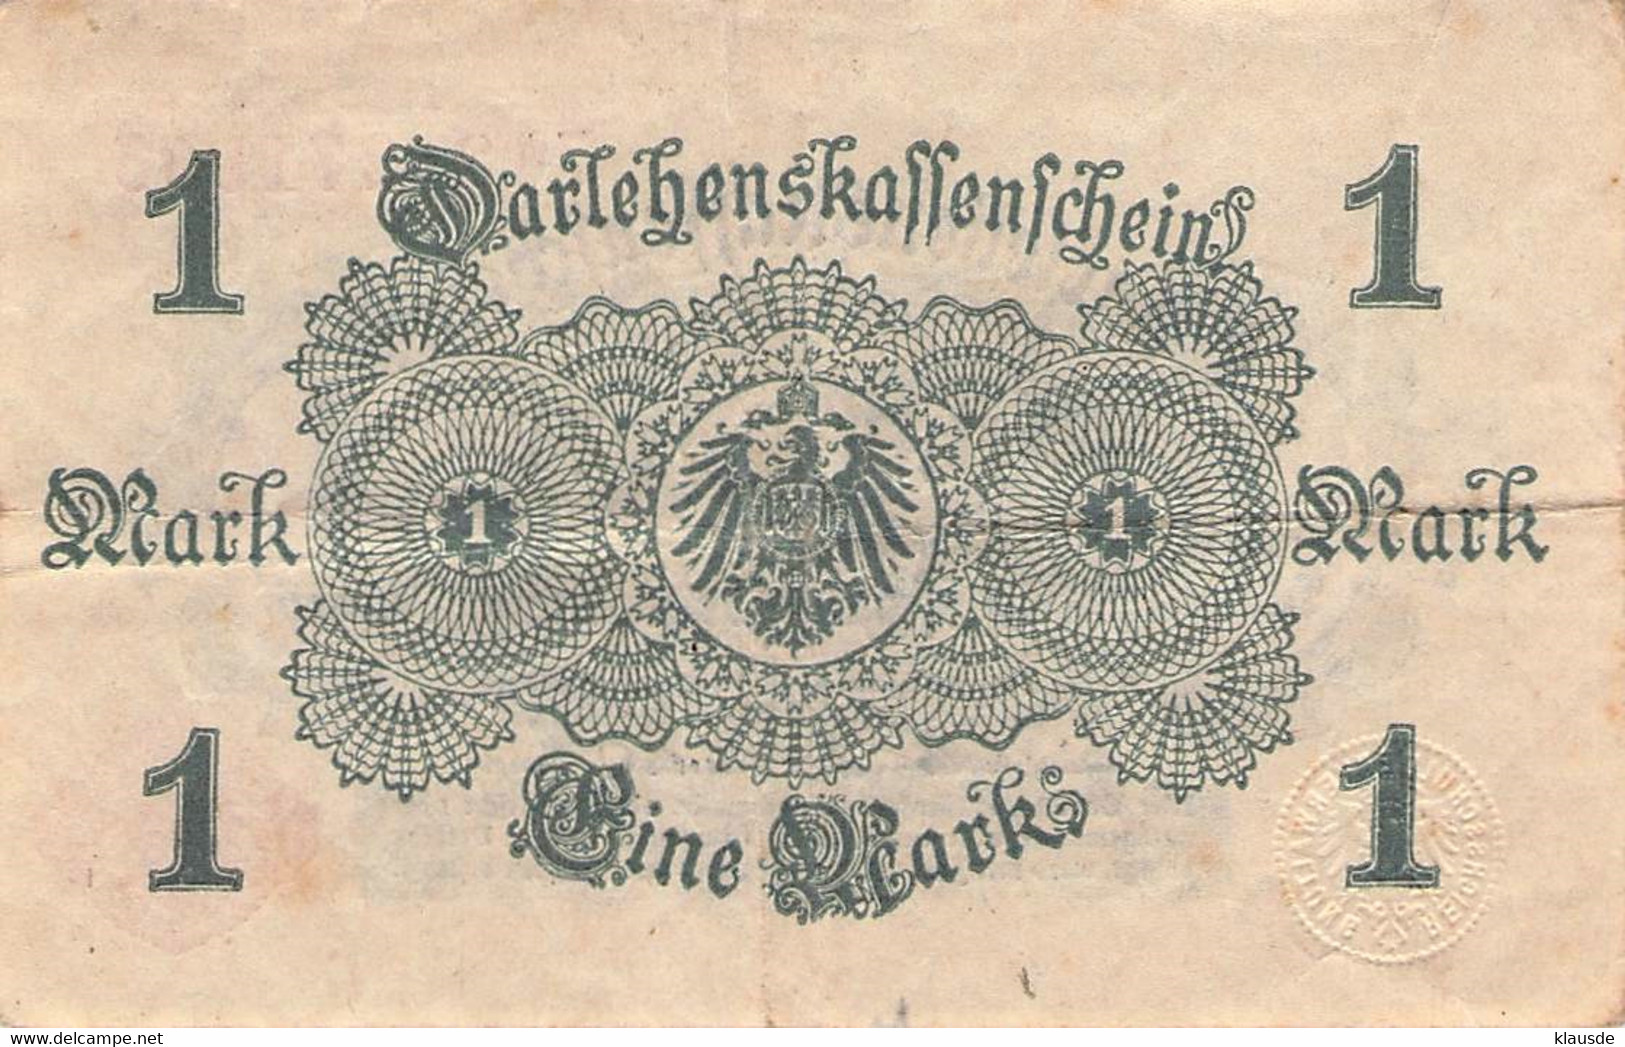 1 Mark 1914 Deutsche Reichsbanknote VG/G (IV)  Darlehenskassenschein - 1 Mark